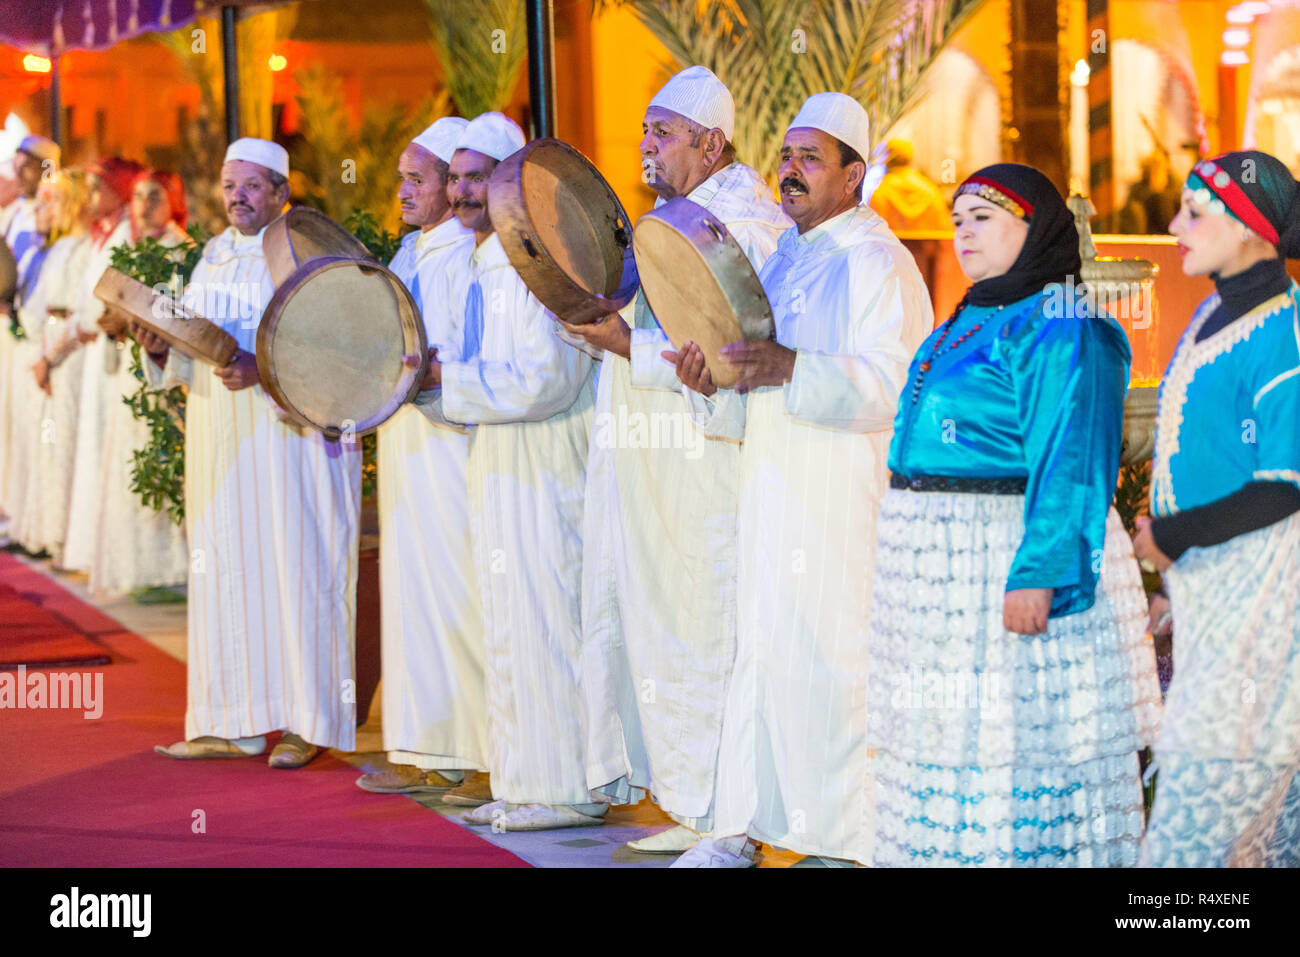 26-02-15, Marrakesch, Marokko. Touristische Unterhaltung im Chez Ali Fantasia zeigen. Die Gäste werden durch die Lieder und Tänze der Folkloregruppen unterhalten, ein. Stockfoto